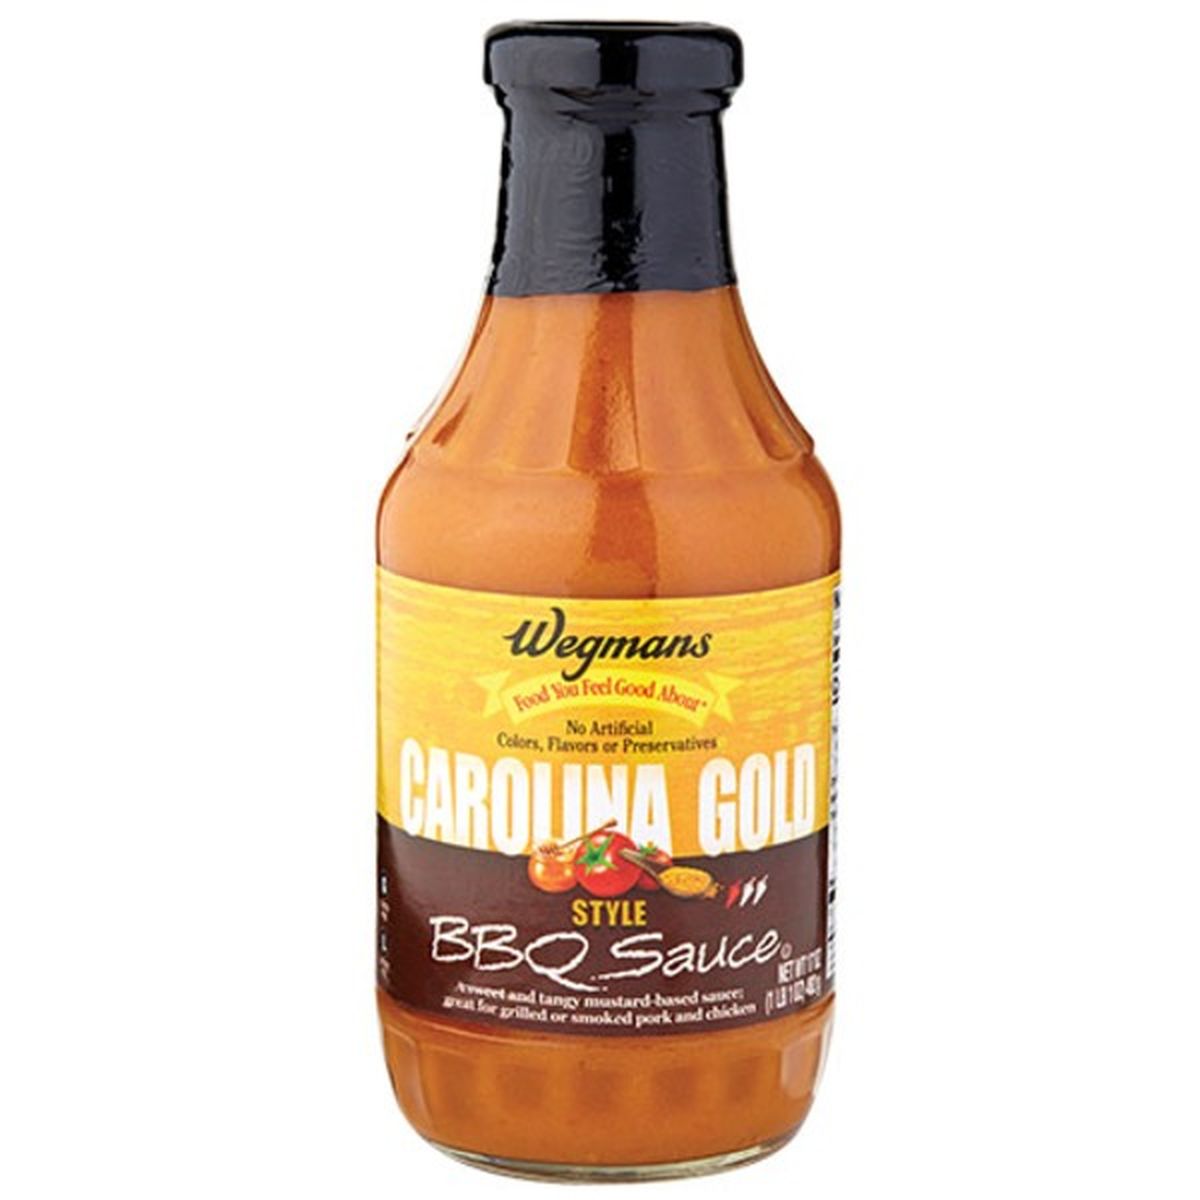 Calories in Wegmans Gold Carolina BBQ Sauce